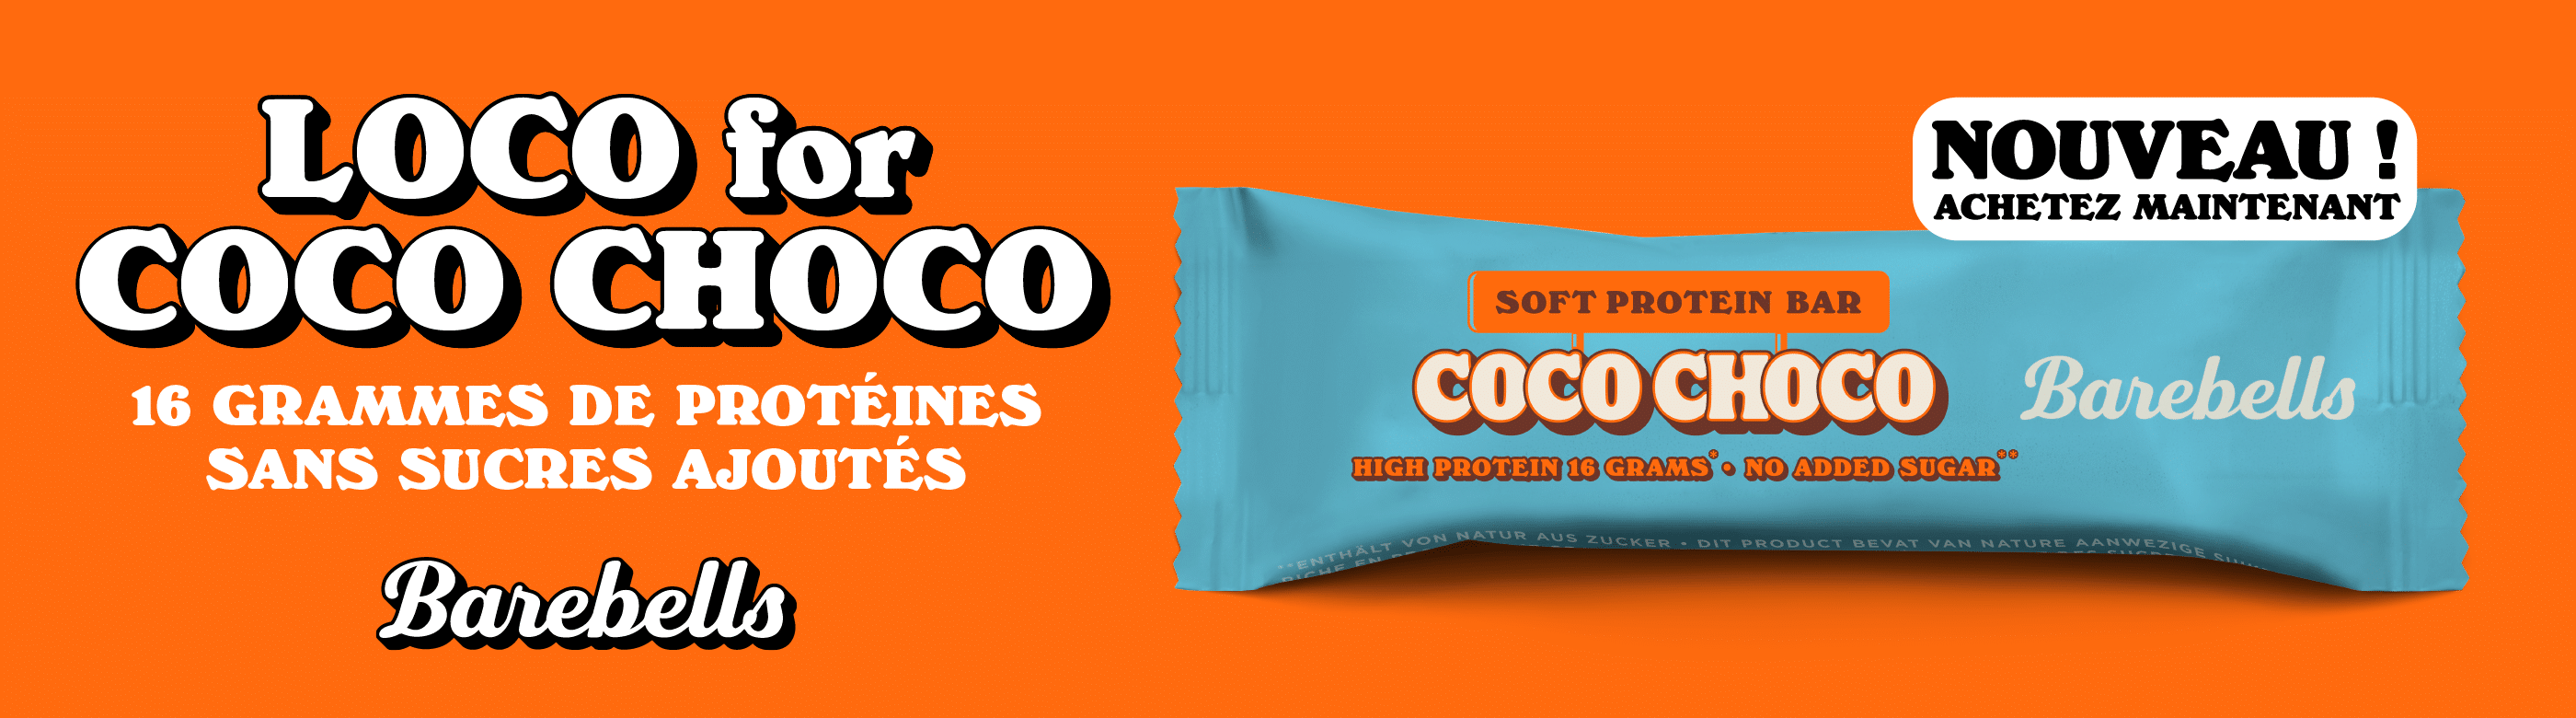 Coco Choco Barebells